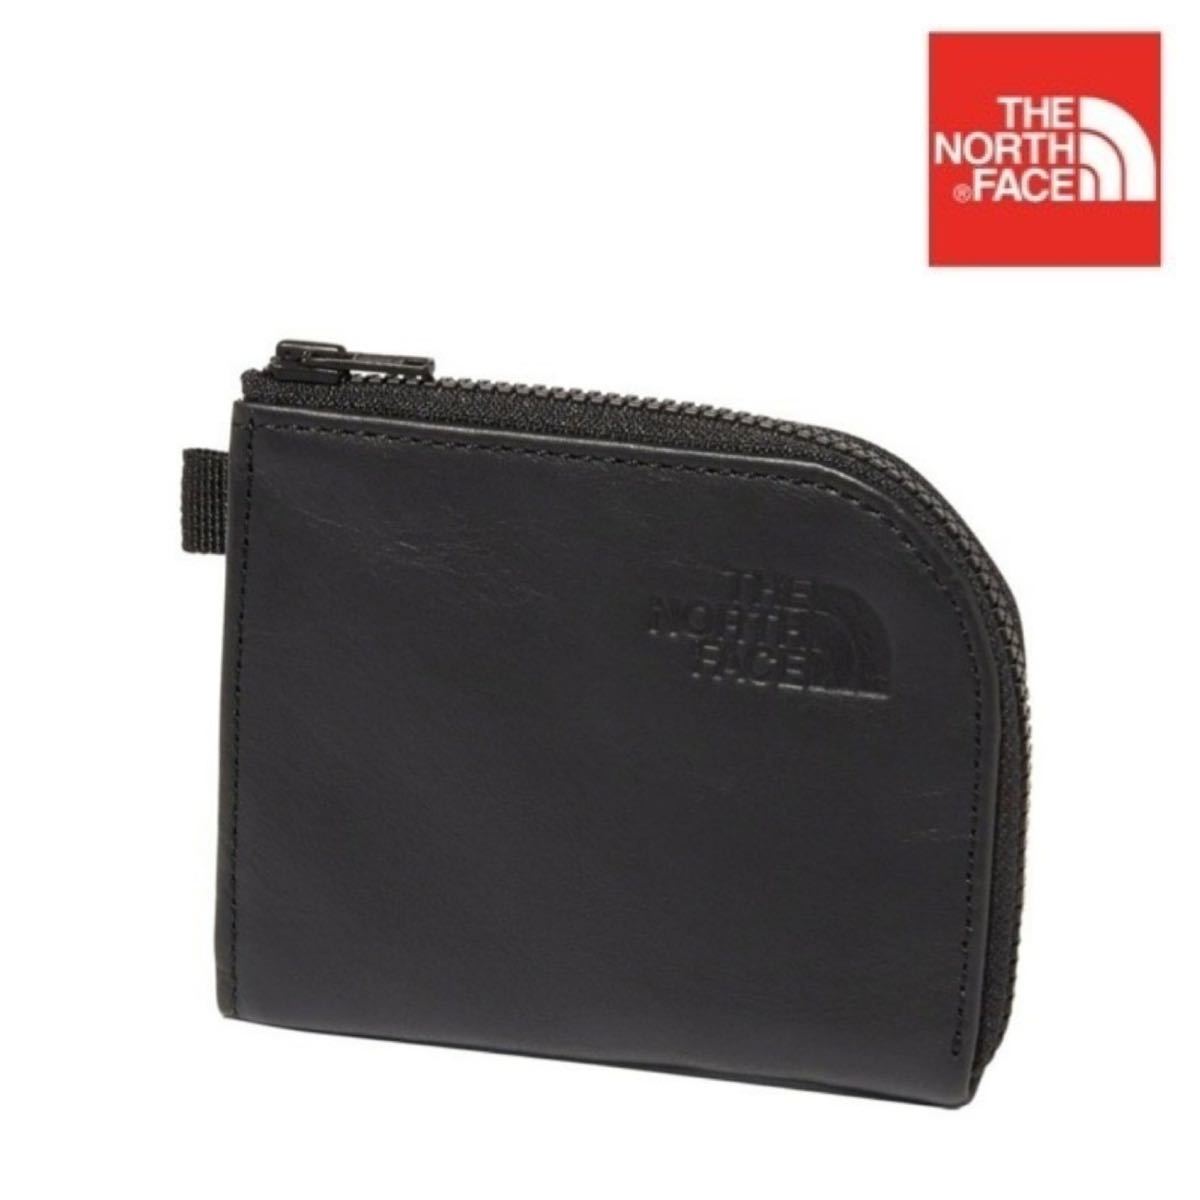 THE NORTH FACE Roamer Wallet TW NM82399 ノースフェイス ローマーワレット ブラック 新品未使用 財布 レザー 牛革